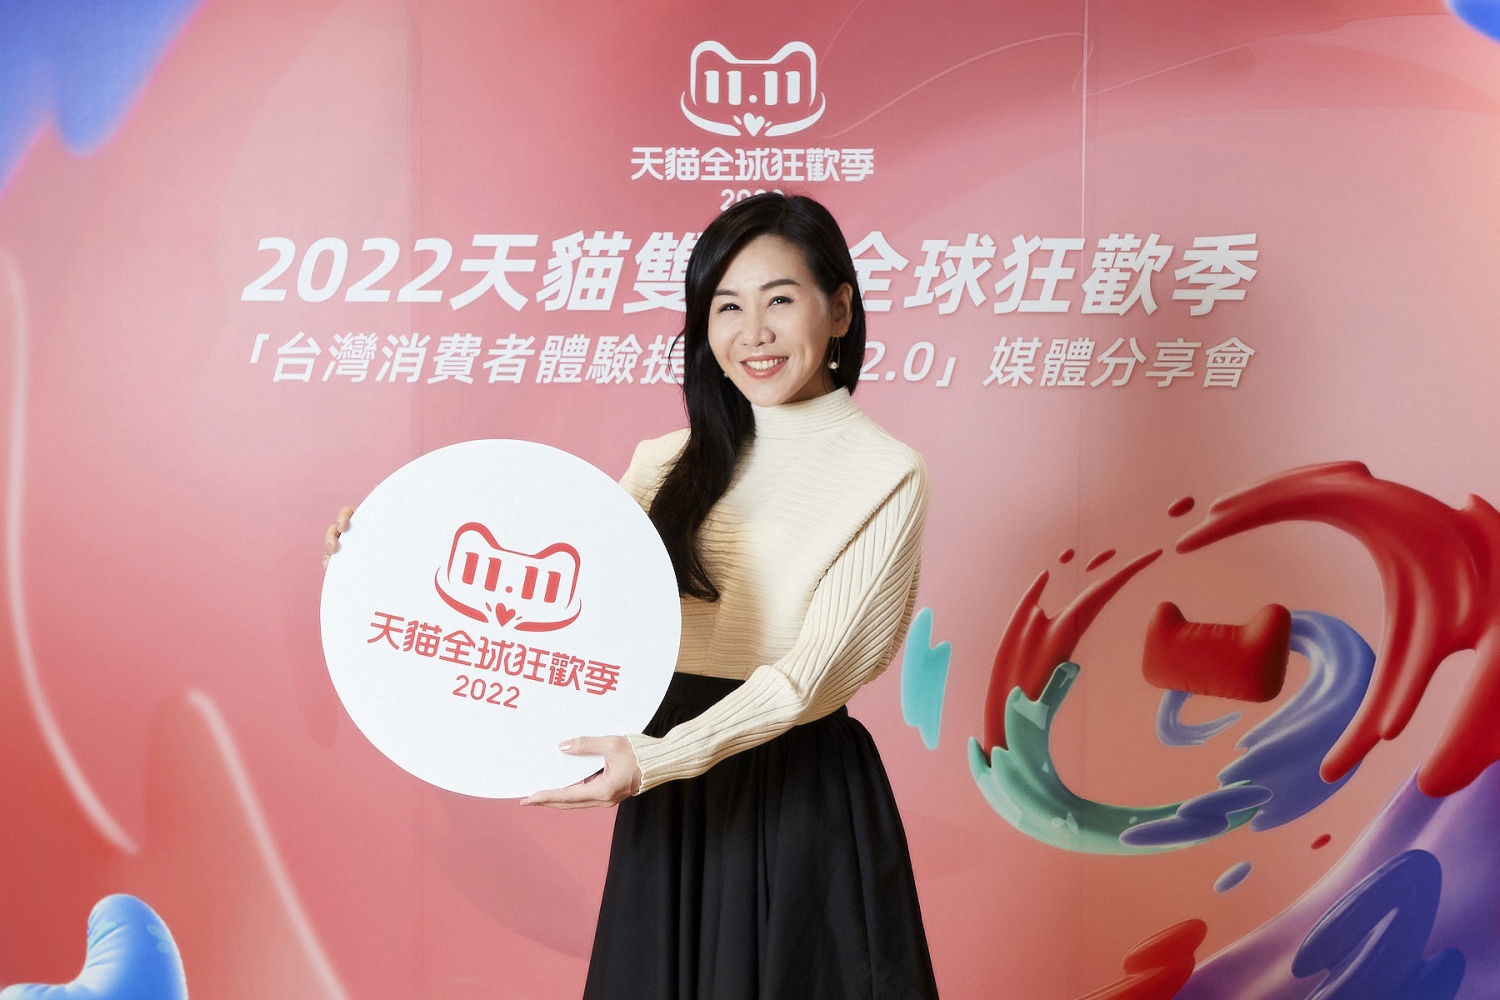 天貓淘寶海外台灣總經理劉慧娟分享「消費者體驗提升計畫2.0」，以差異化服務滿足各消費者需求